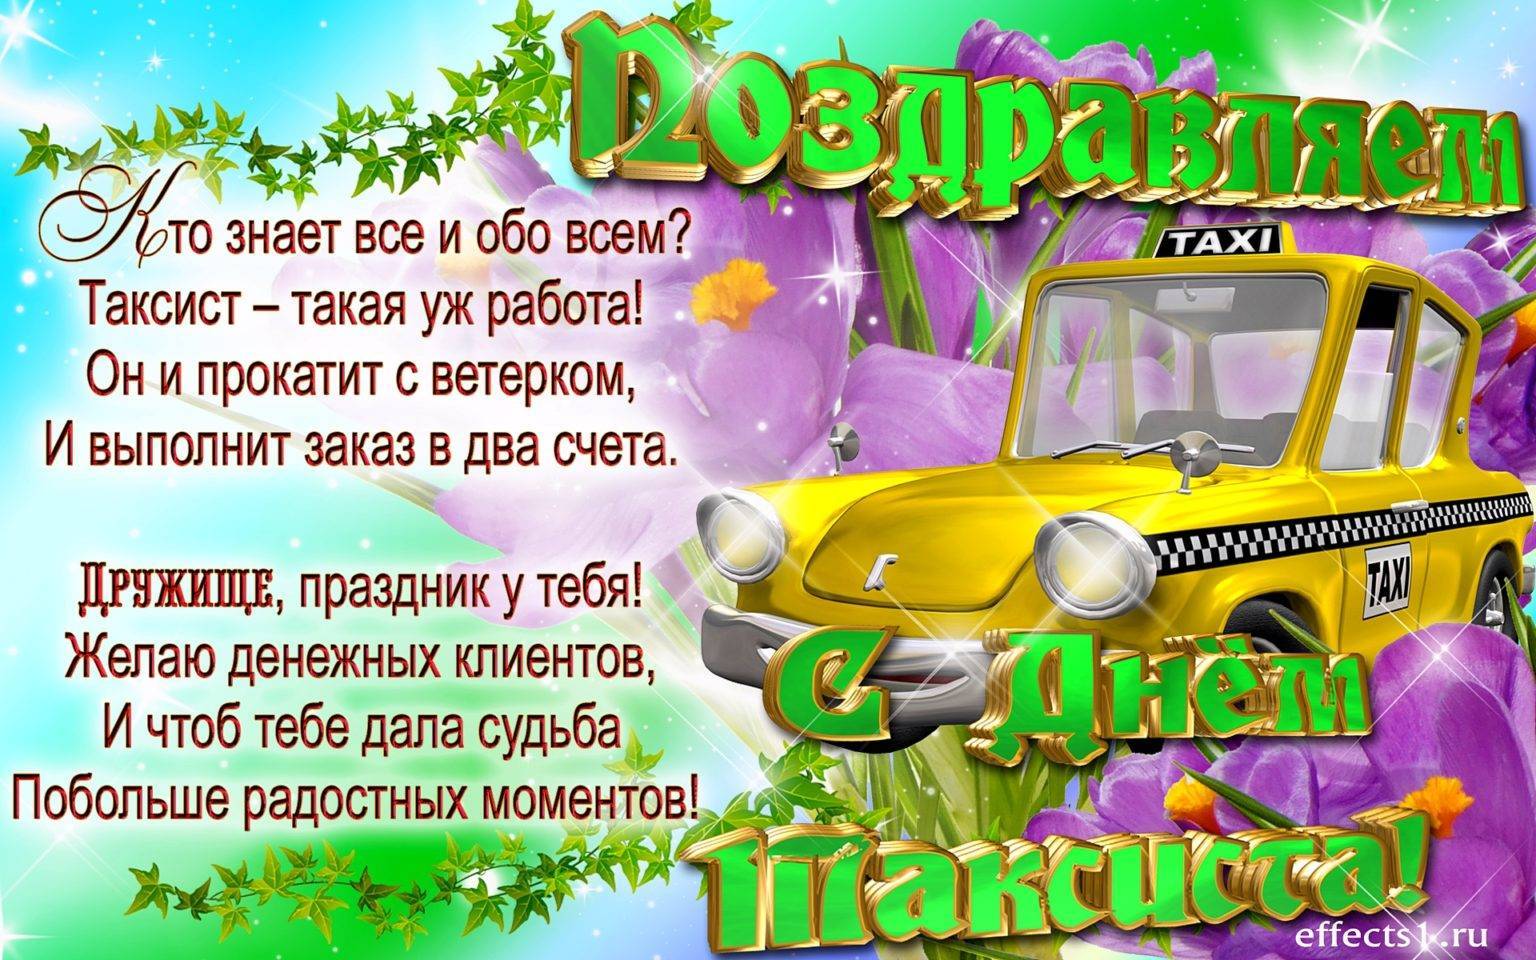 Международный день таксиста — профессиональный праздник 22 марта - "слово без границ" - новости россии и мира сегодня